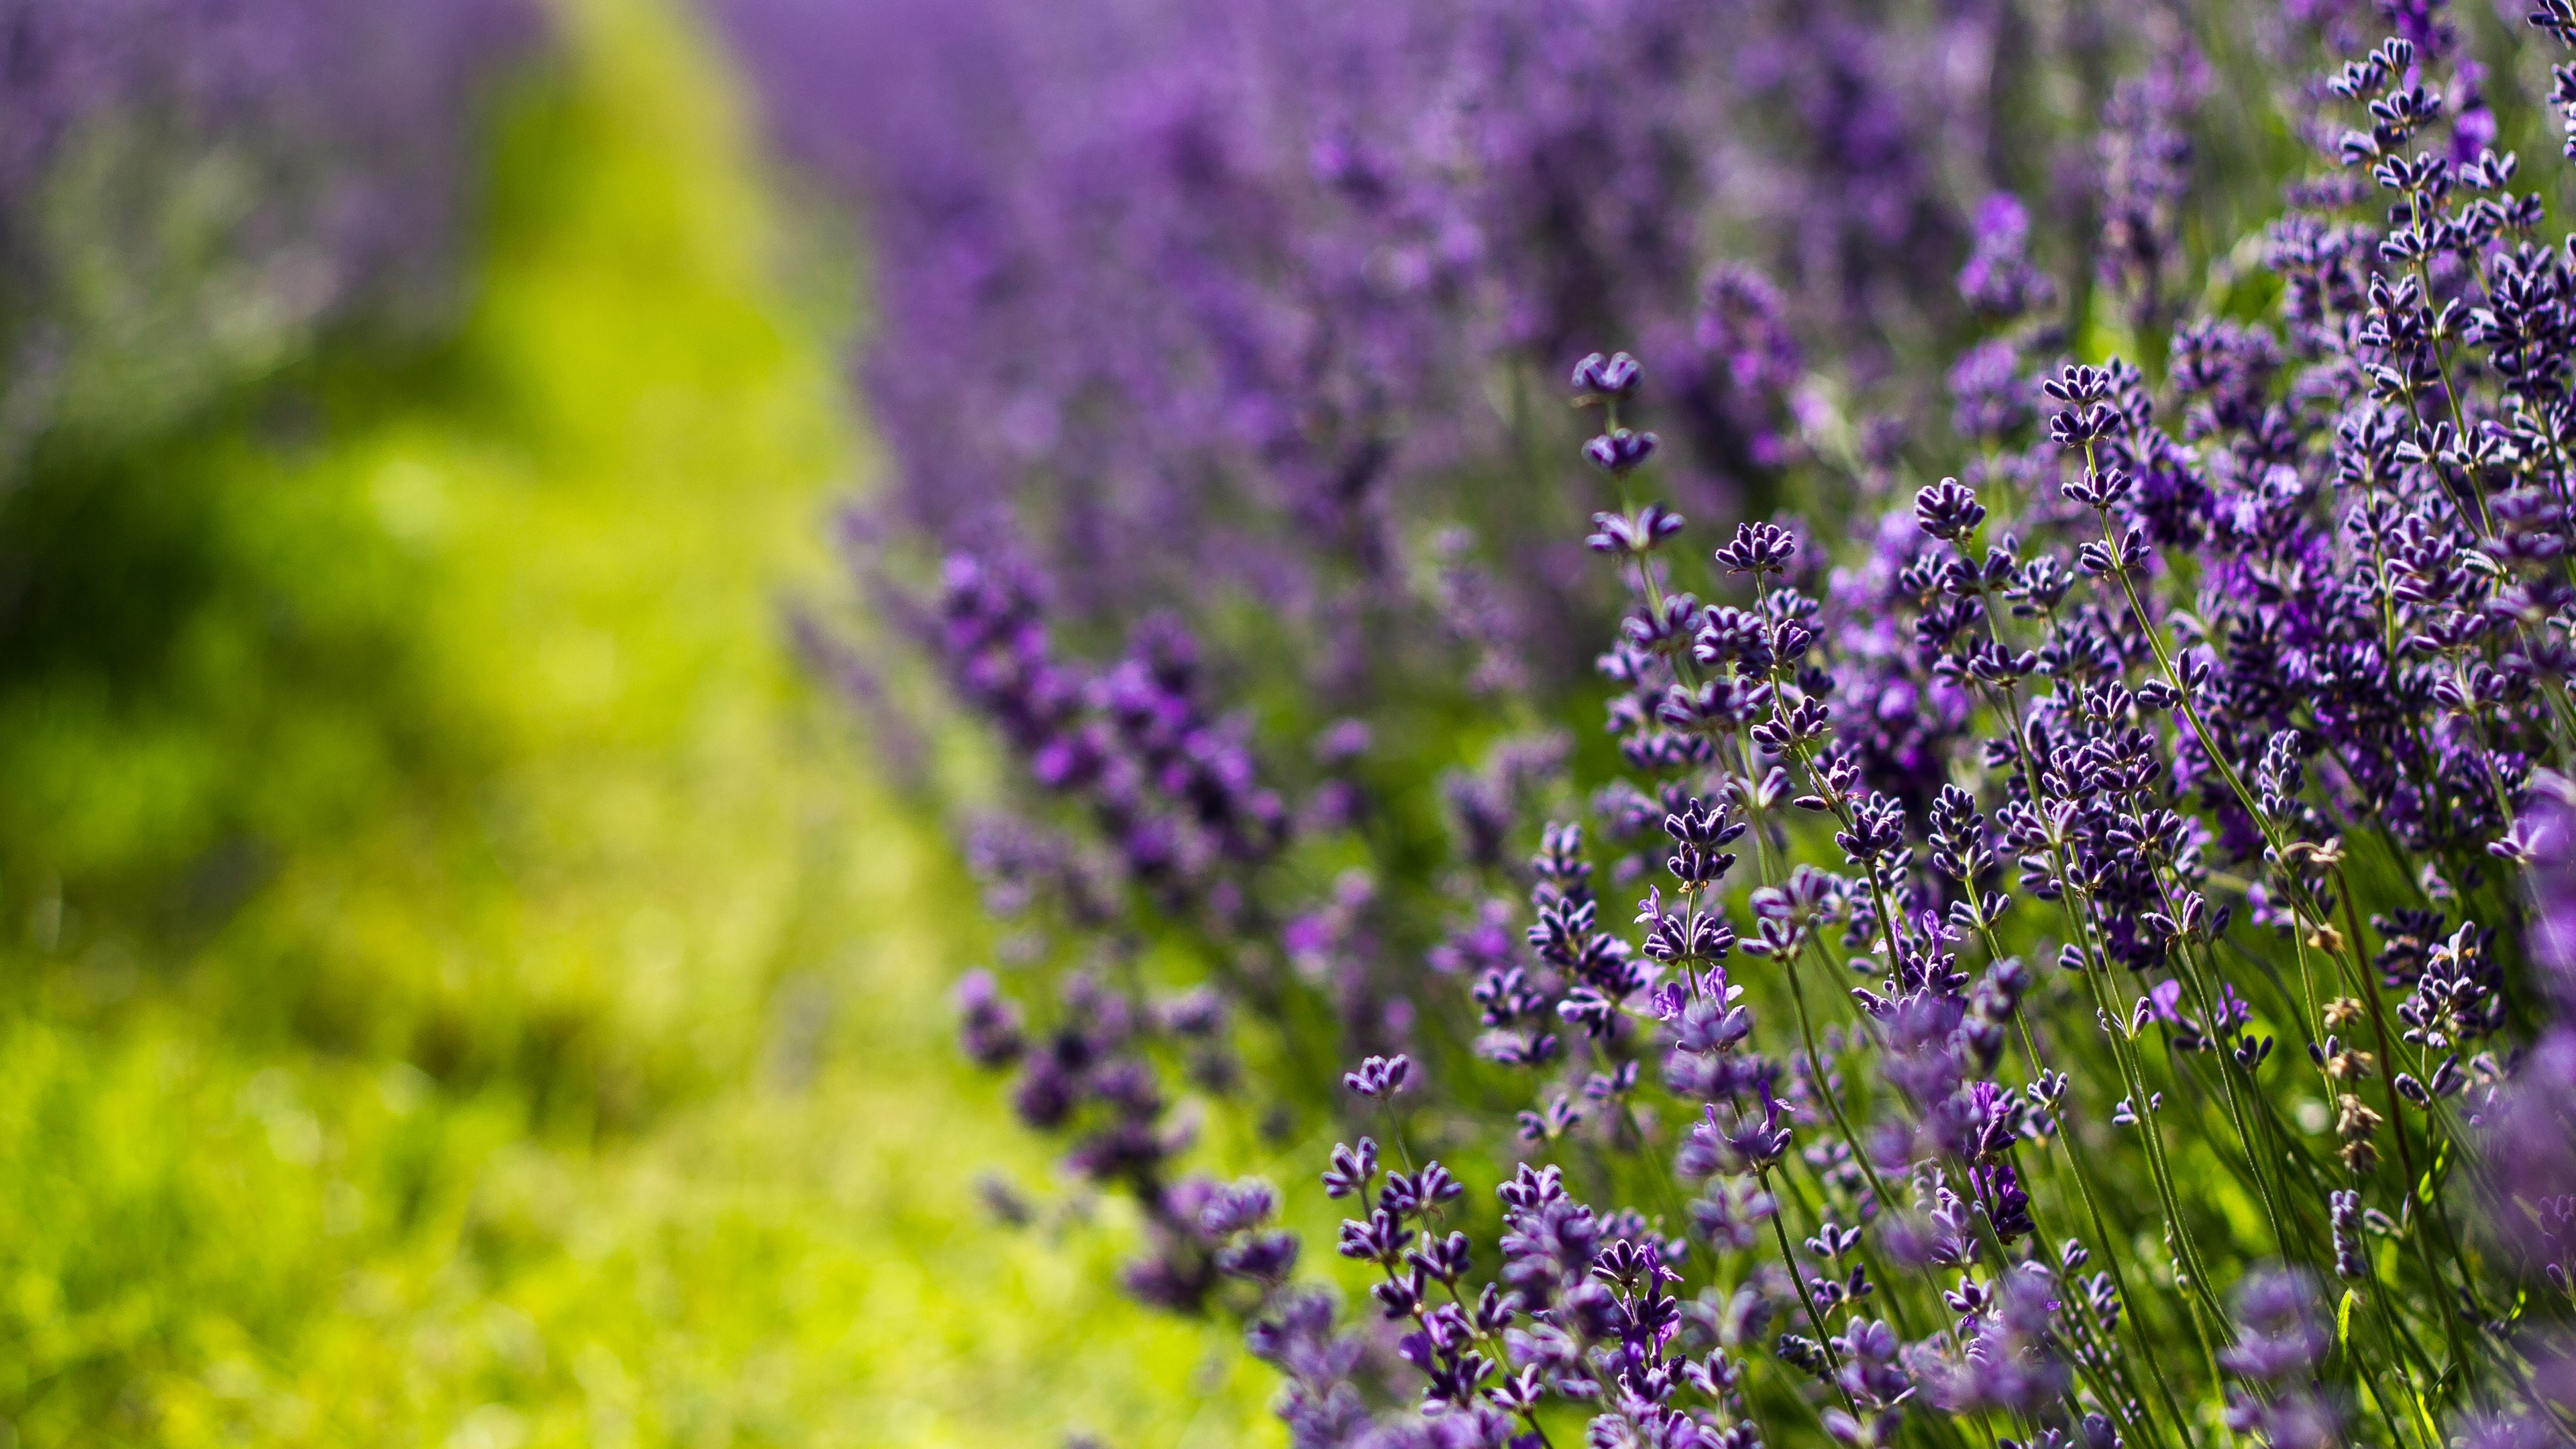 lavender flowers lilac summer 4k 1541114010 - lavender, flowers, lilac, summer 4k - Lilac, Lavender, Flowers